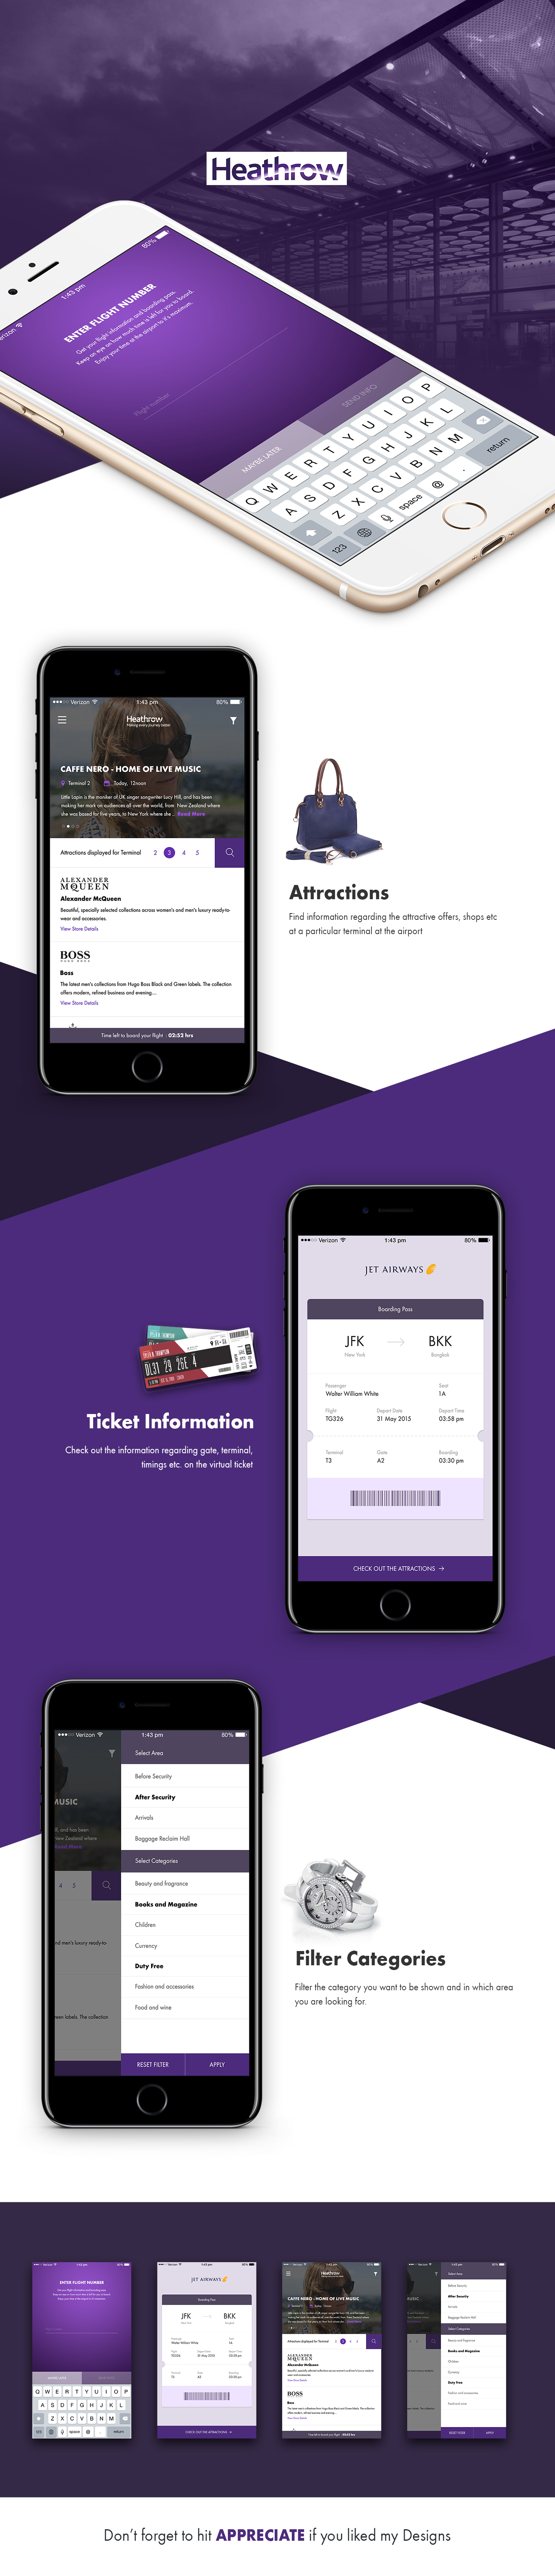 Heathrow airport design app ui design Flight app Travel ticket Mobile app iOS App